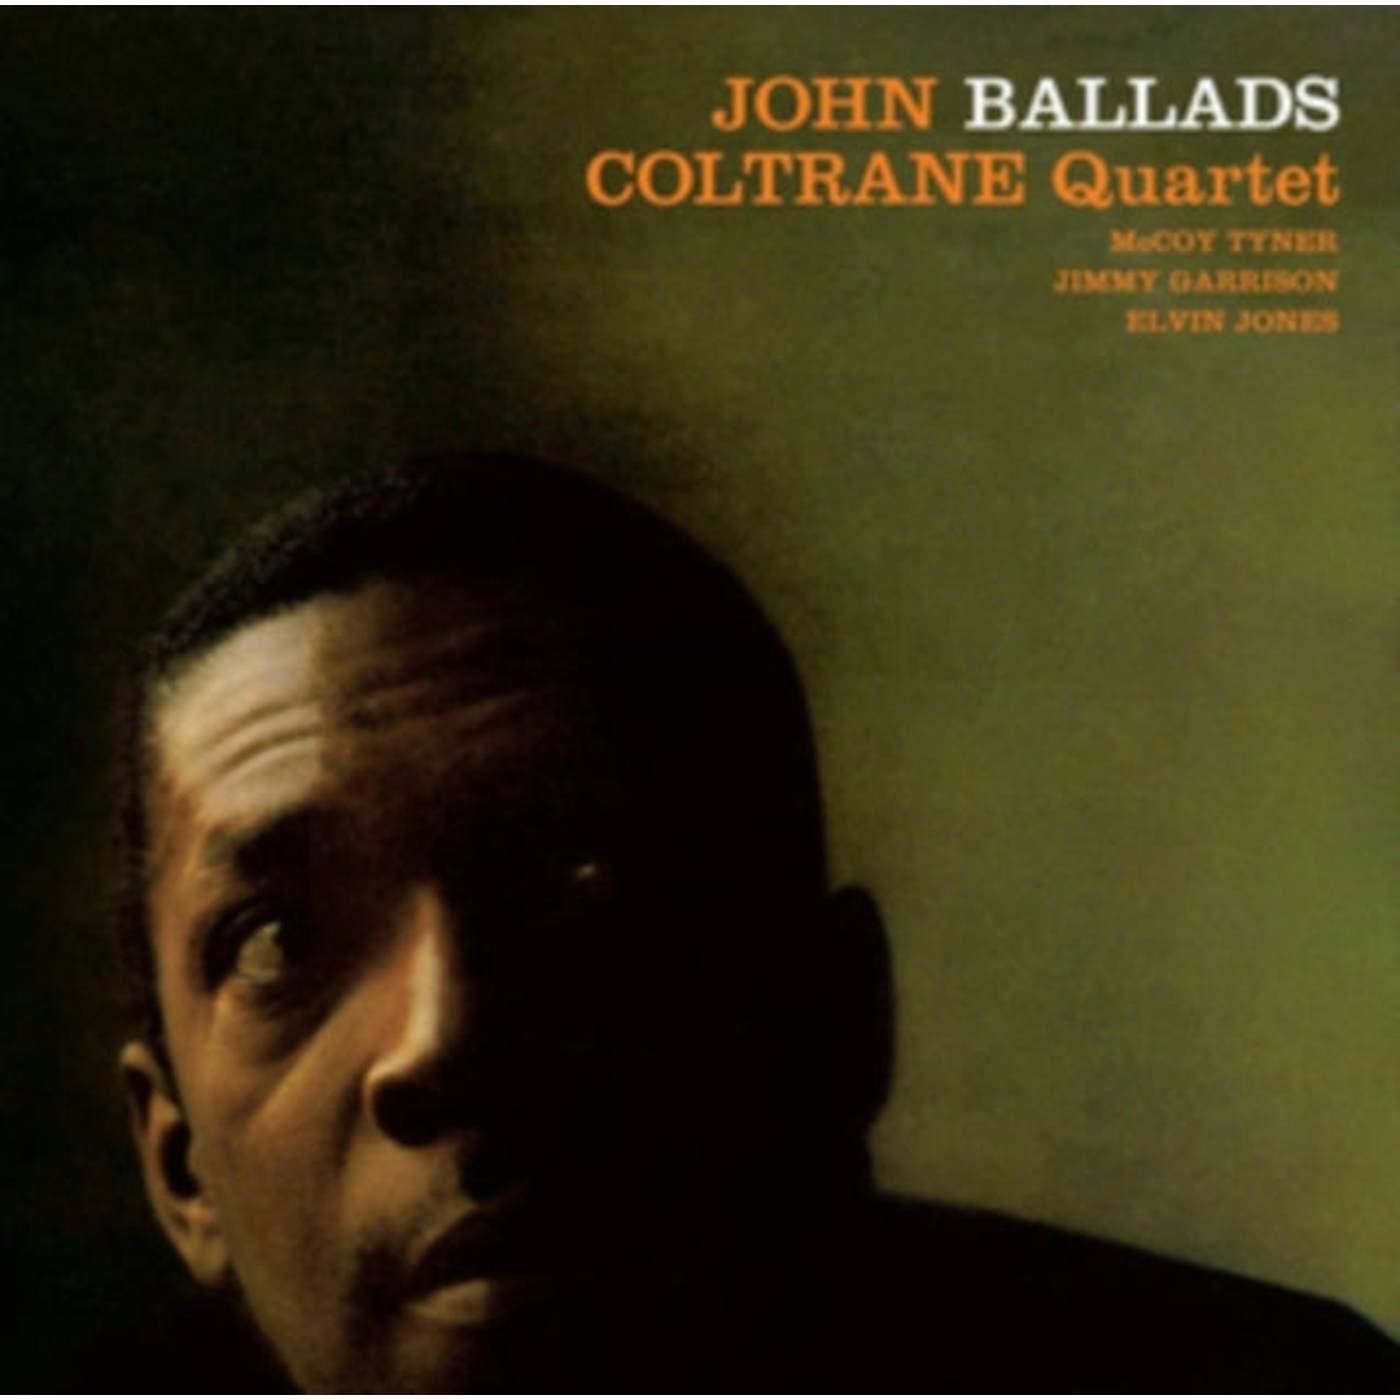 John Coltrane Quartet CD - Ballads